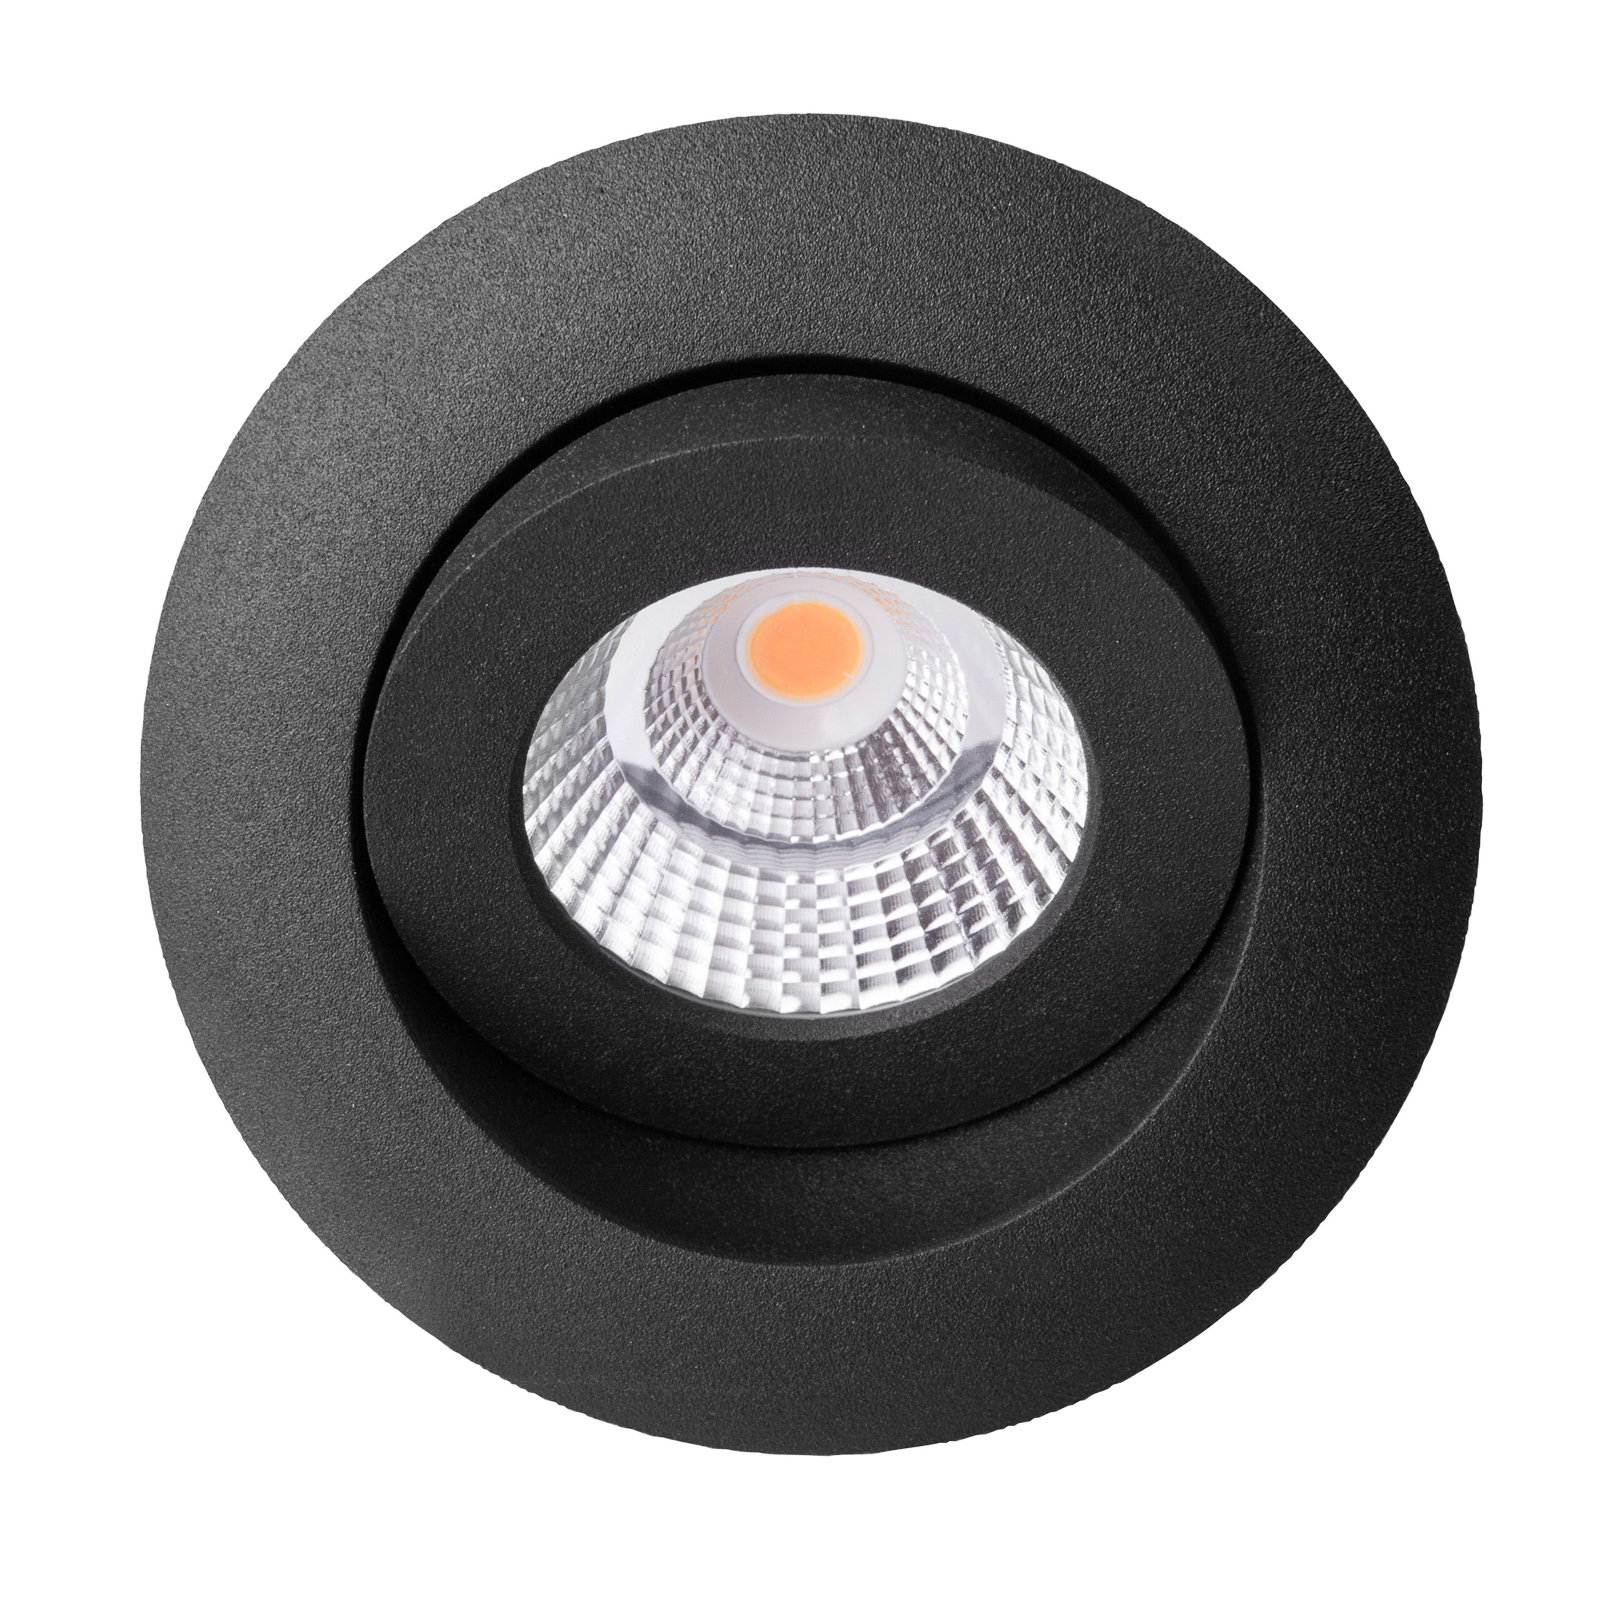 SLC One 360° spot LED incasso dim-to-warm nero